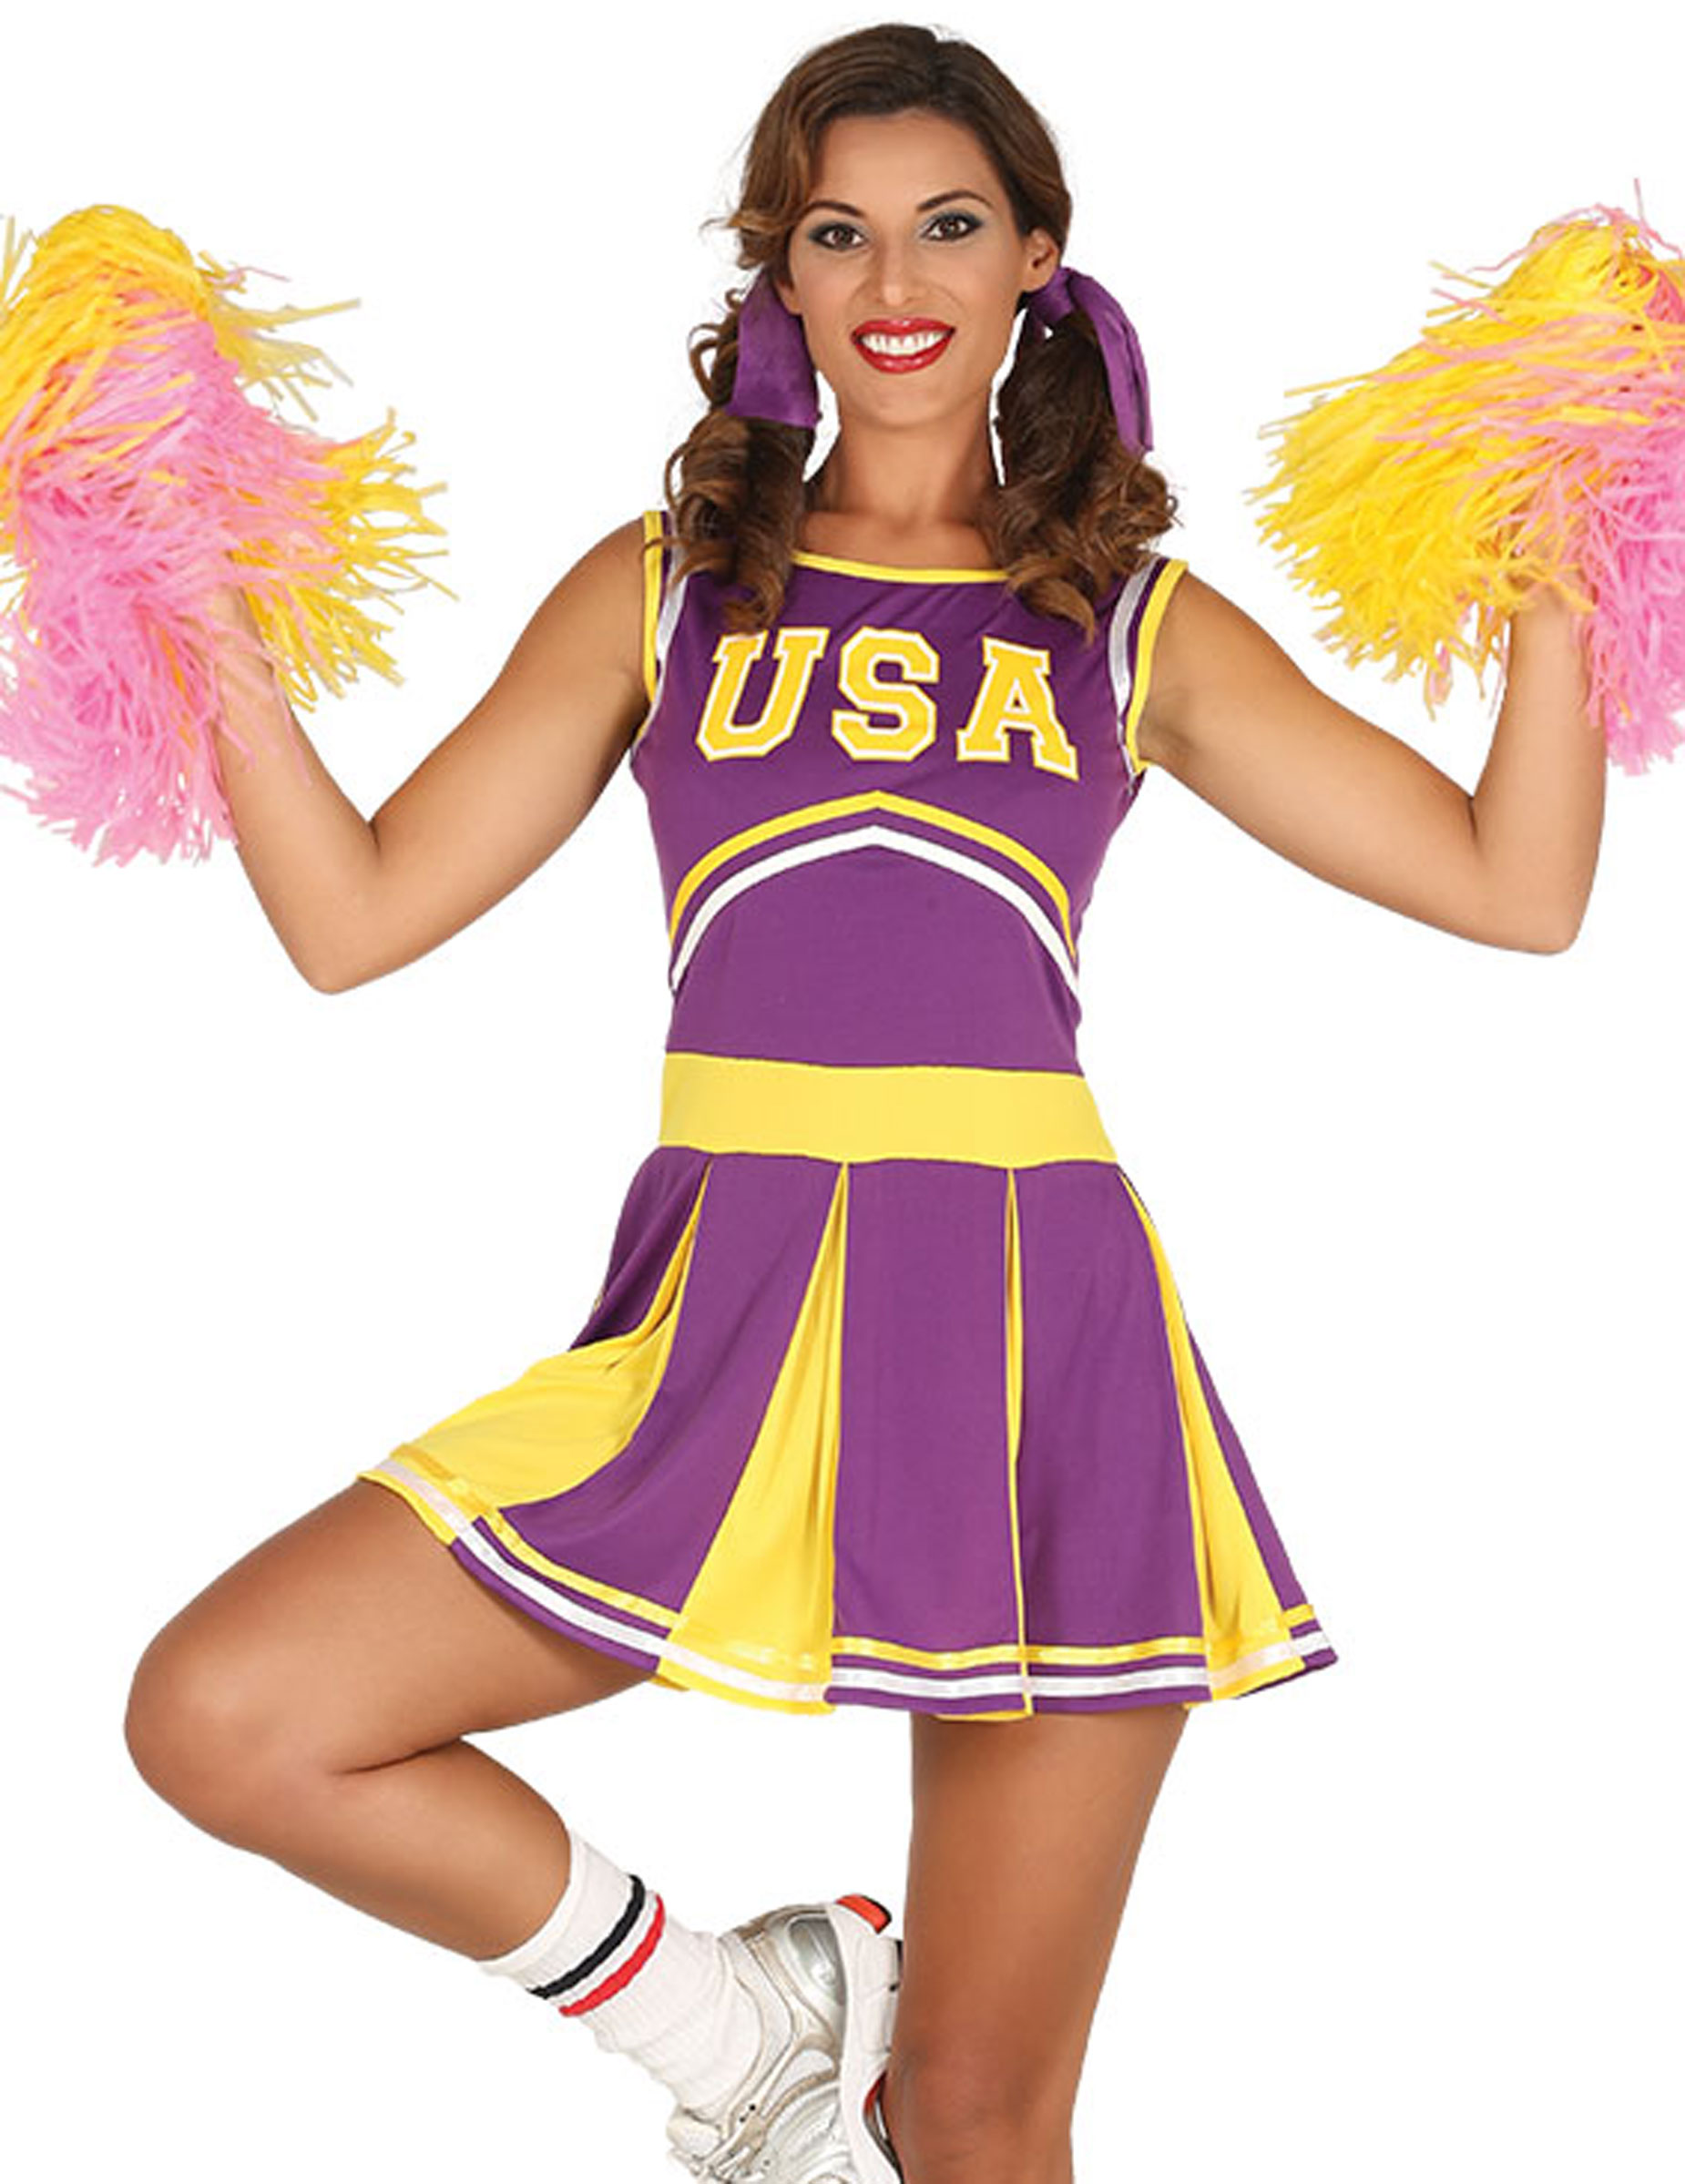 USA Cheerleader-Kleid lila-gelb von FIESTAS GUIRCA, S.L.